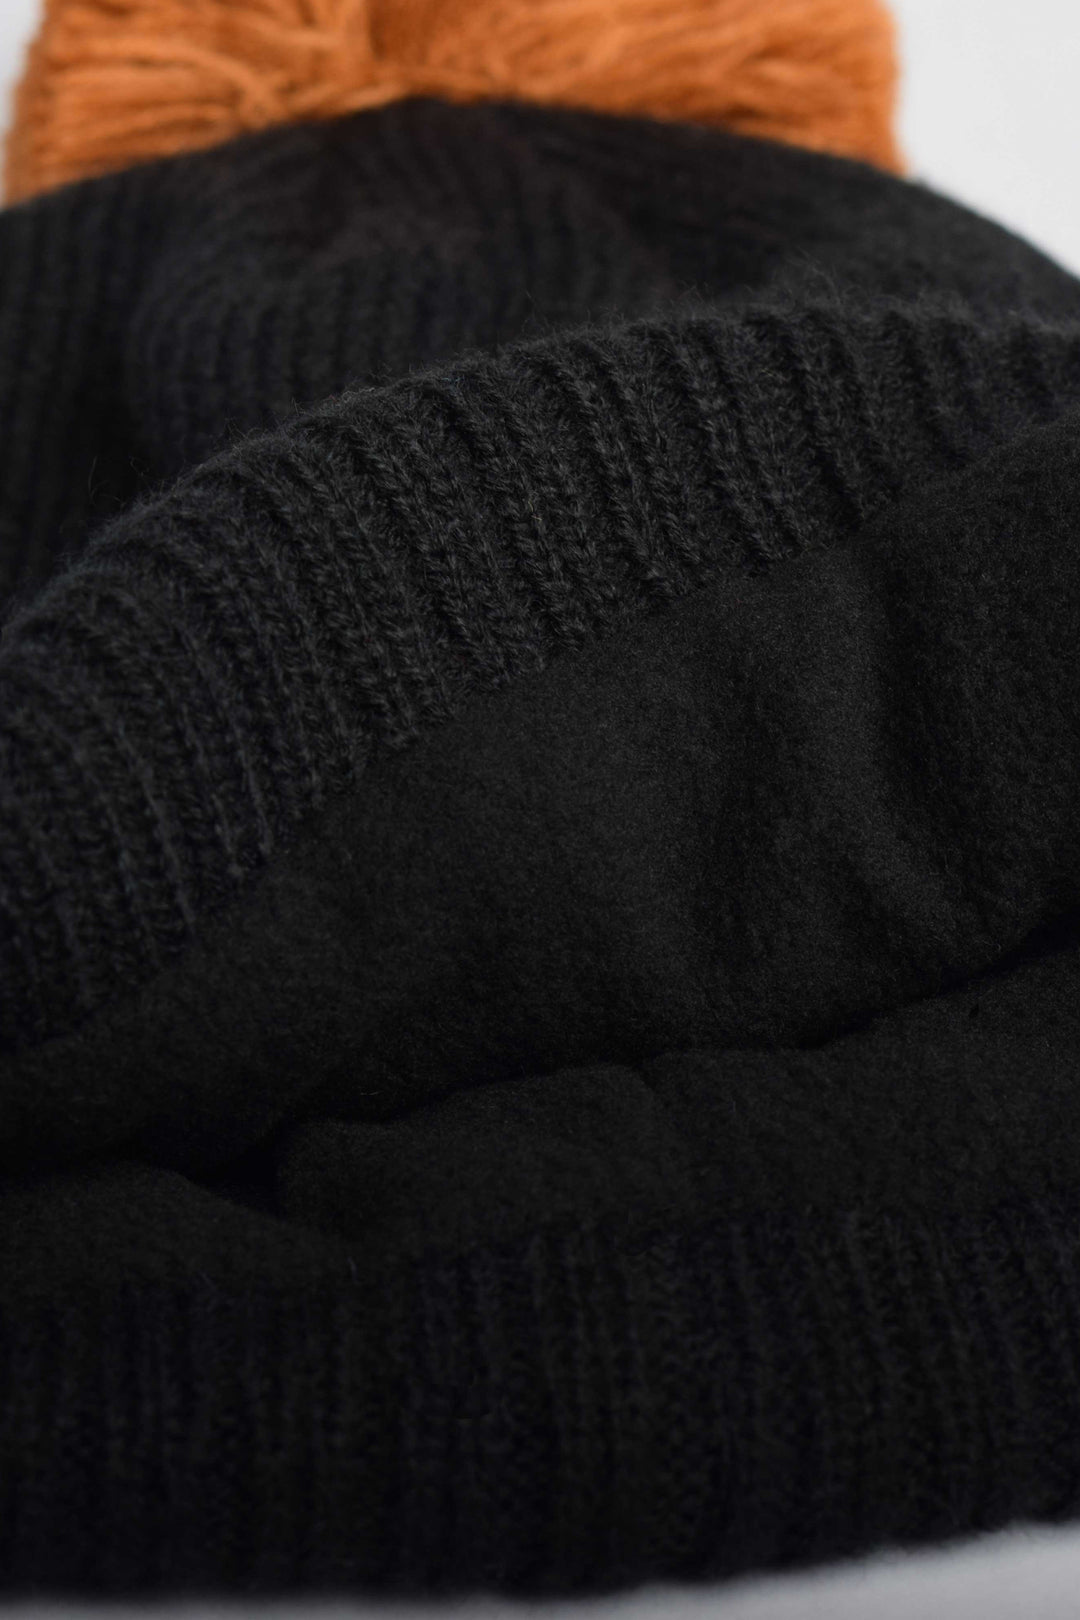 Tuque à pompon en tricot doublée en polar [Whistler series] [Bébé]